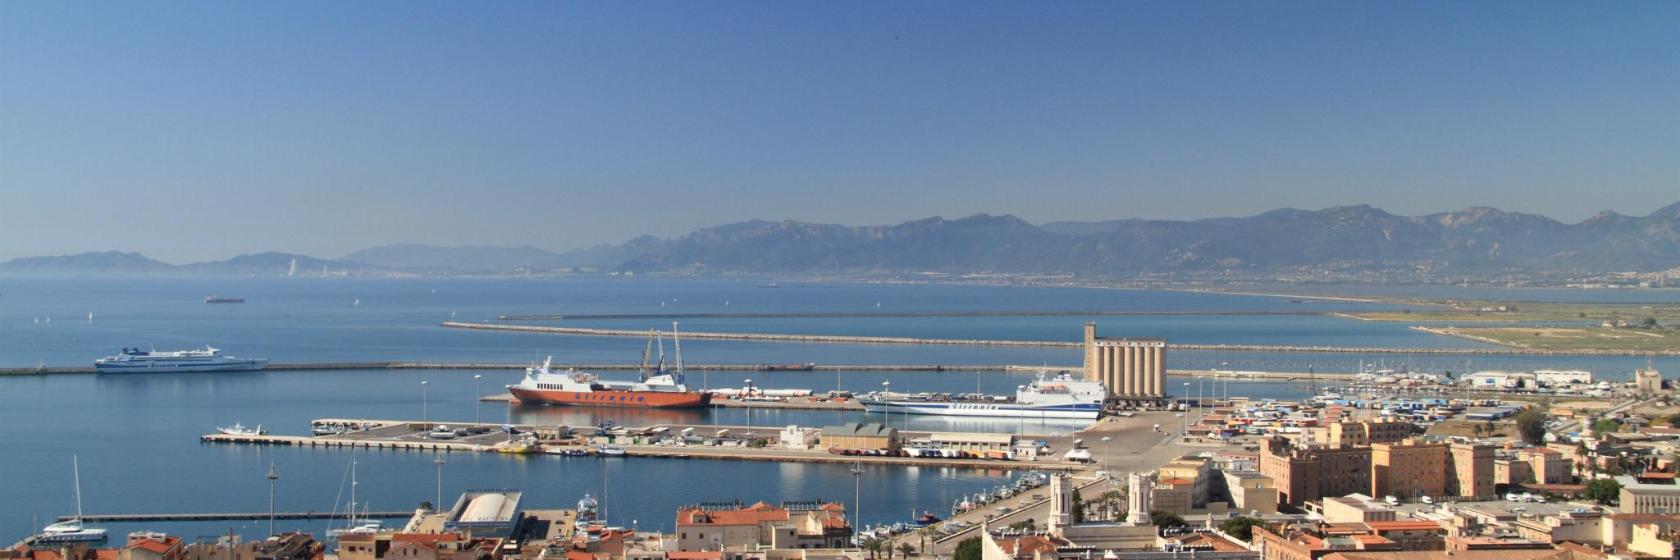 I 10 migliori hotel in zona Porto di Cagliari e dintorni a Cagliari, Italia